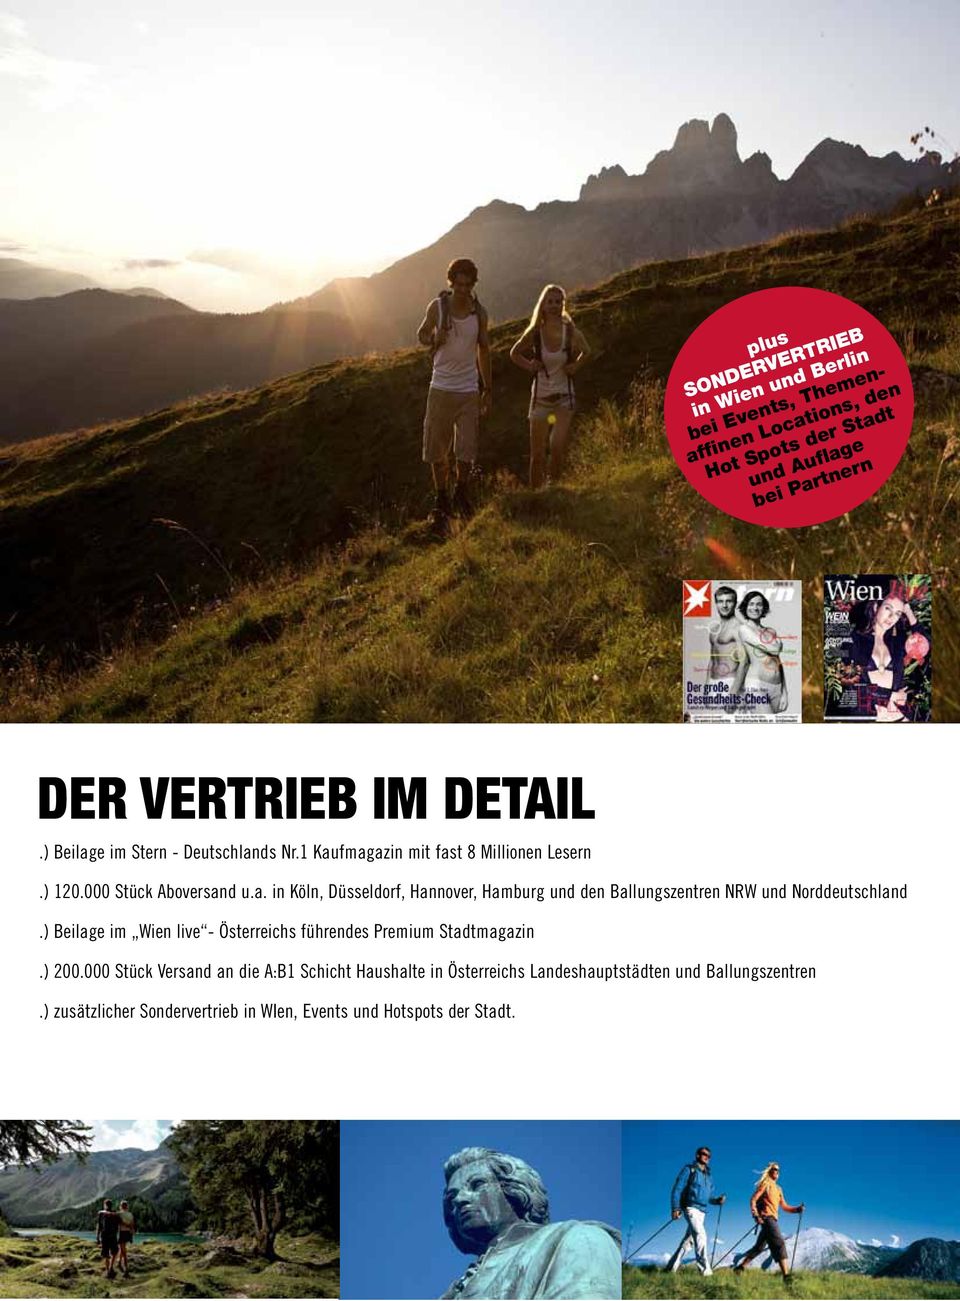 ) Beilage im Wien live - Österreichs führendes Premium Stadtmagazin.) 200.